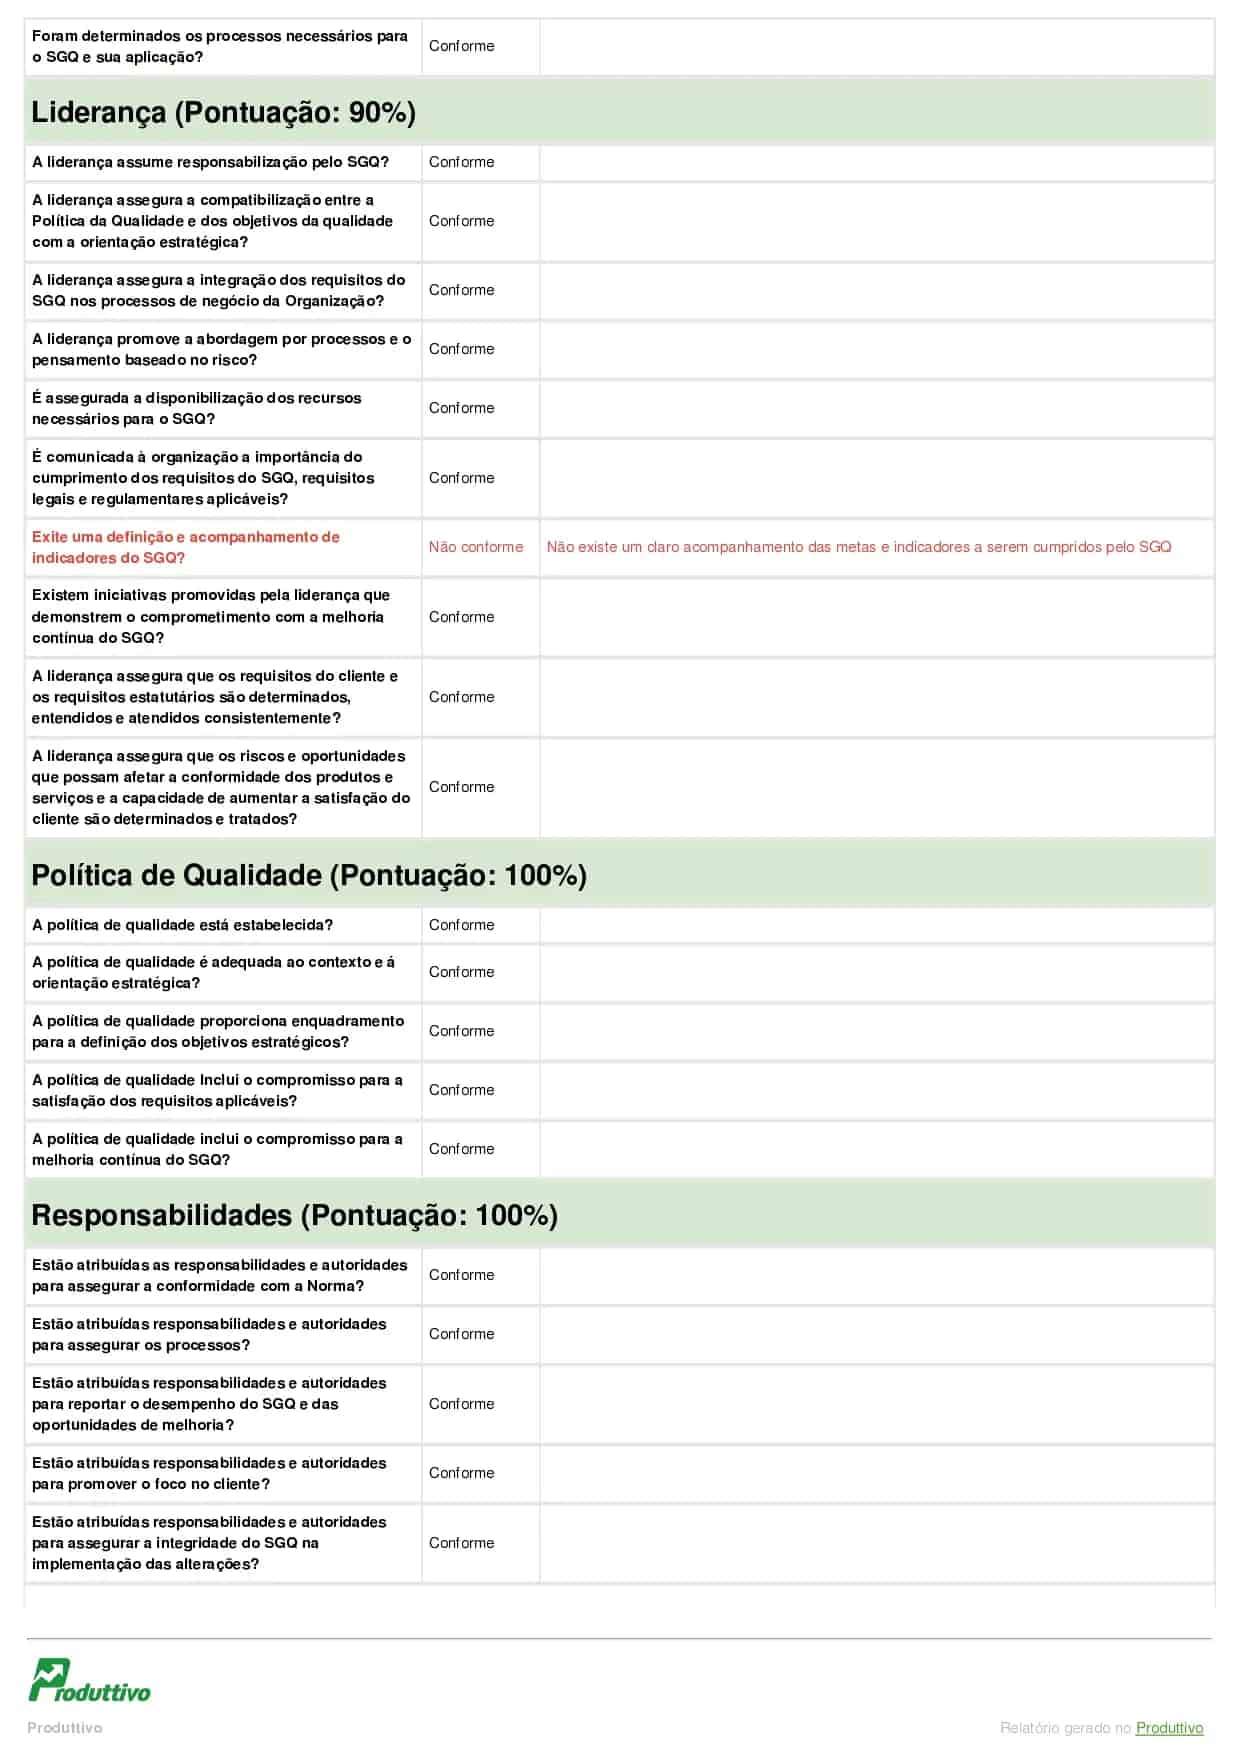 Modelo de checklist ISO digital gerado pelo Produttivo página 02